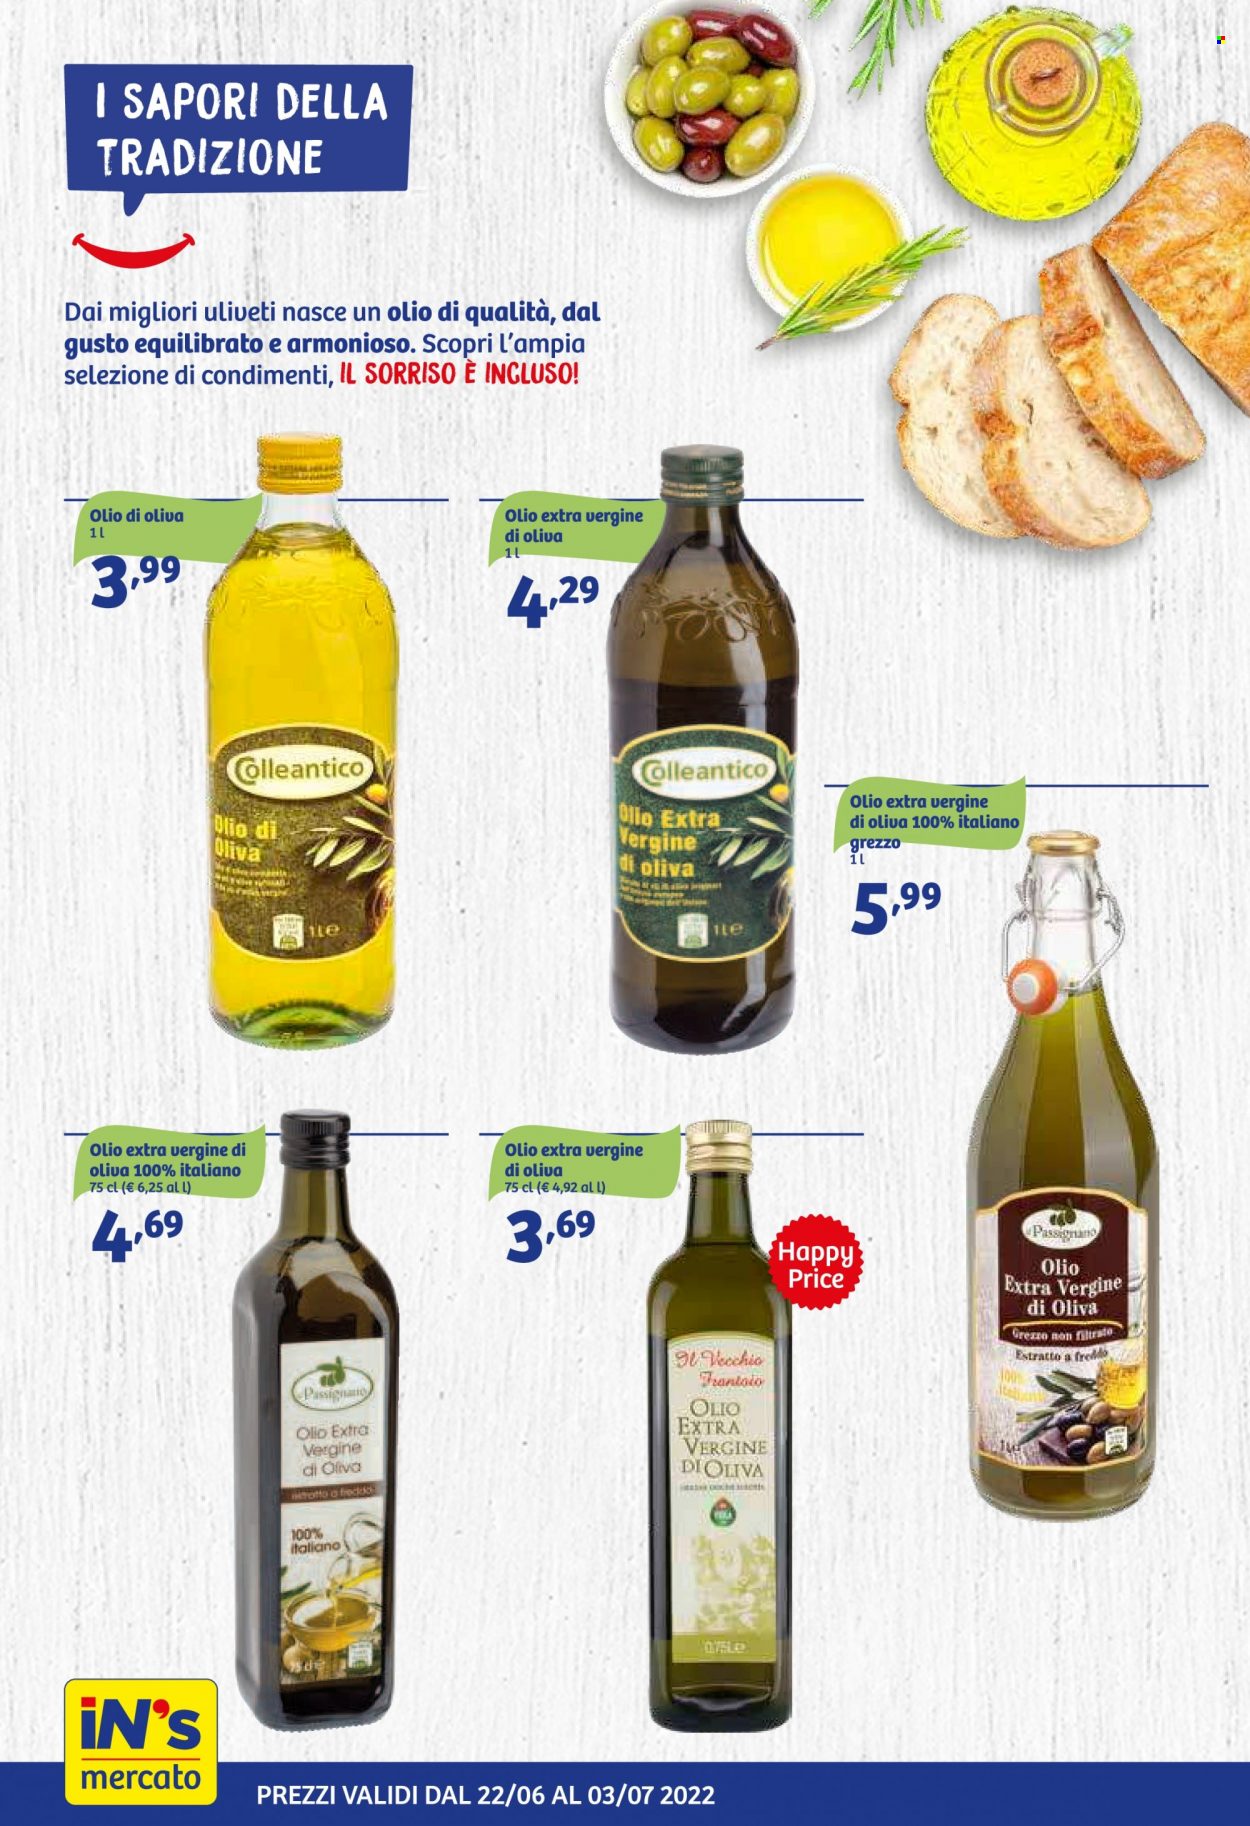 thumbnail - Volantino iN's Mercato - 22/6/2022 - 3/7/2022 - Prodotti in offerta - olio, olio extra vergine di oliva, olio di oliva. Pagina 12.